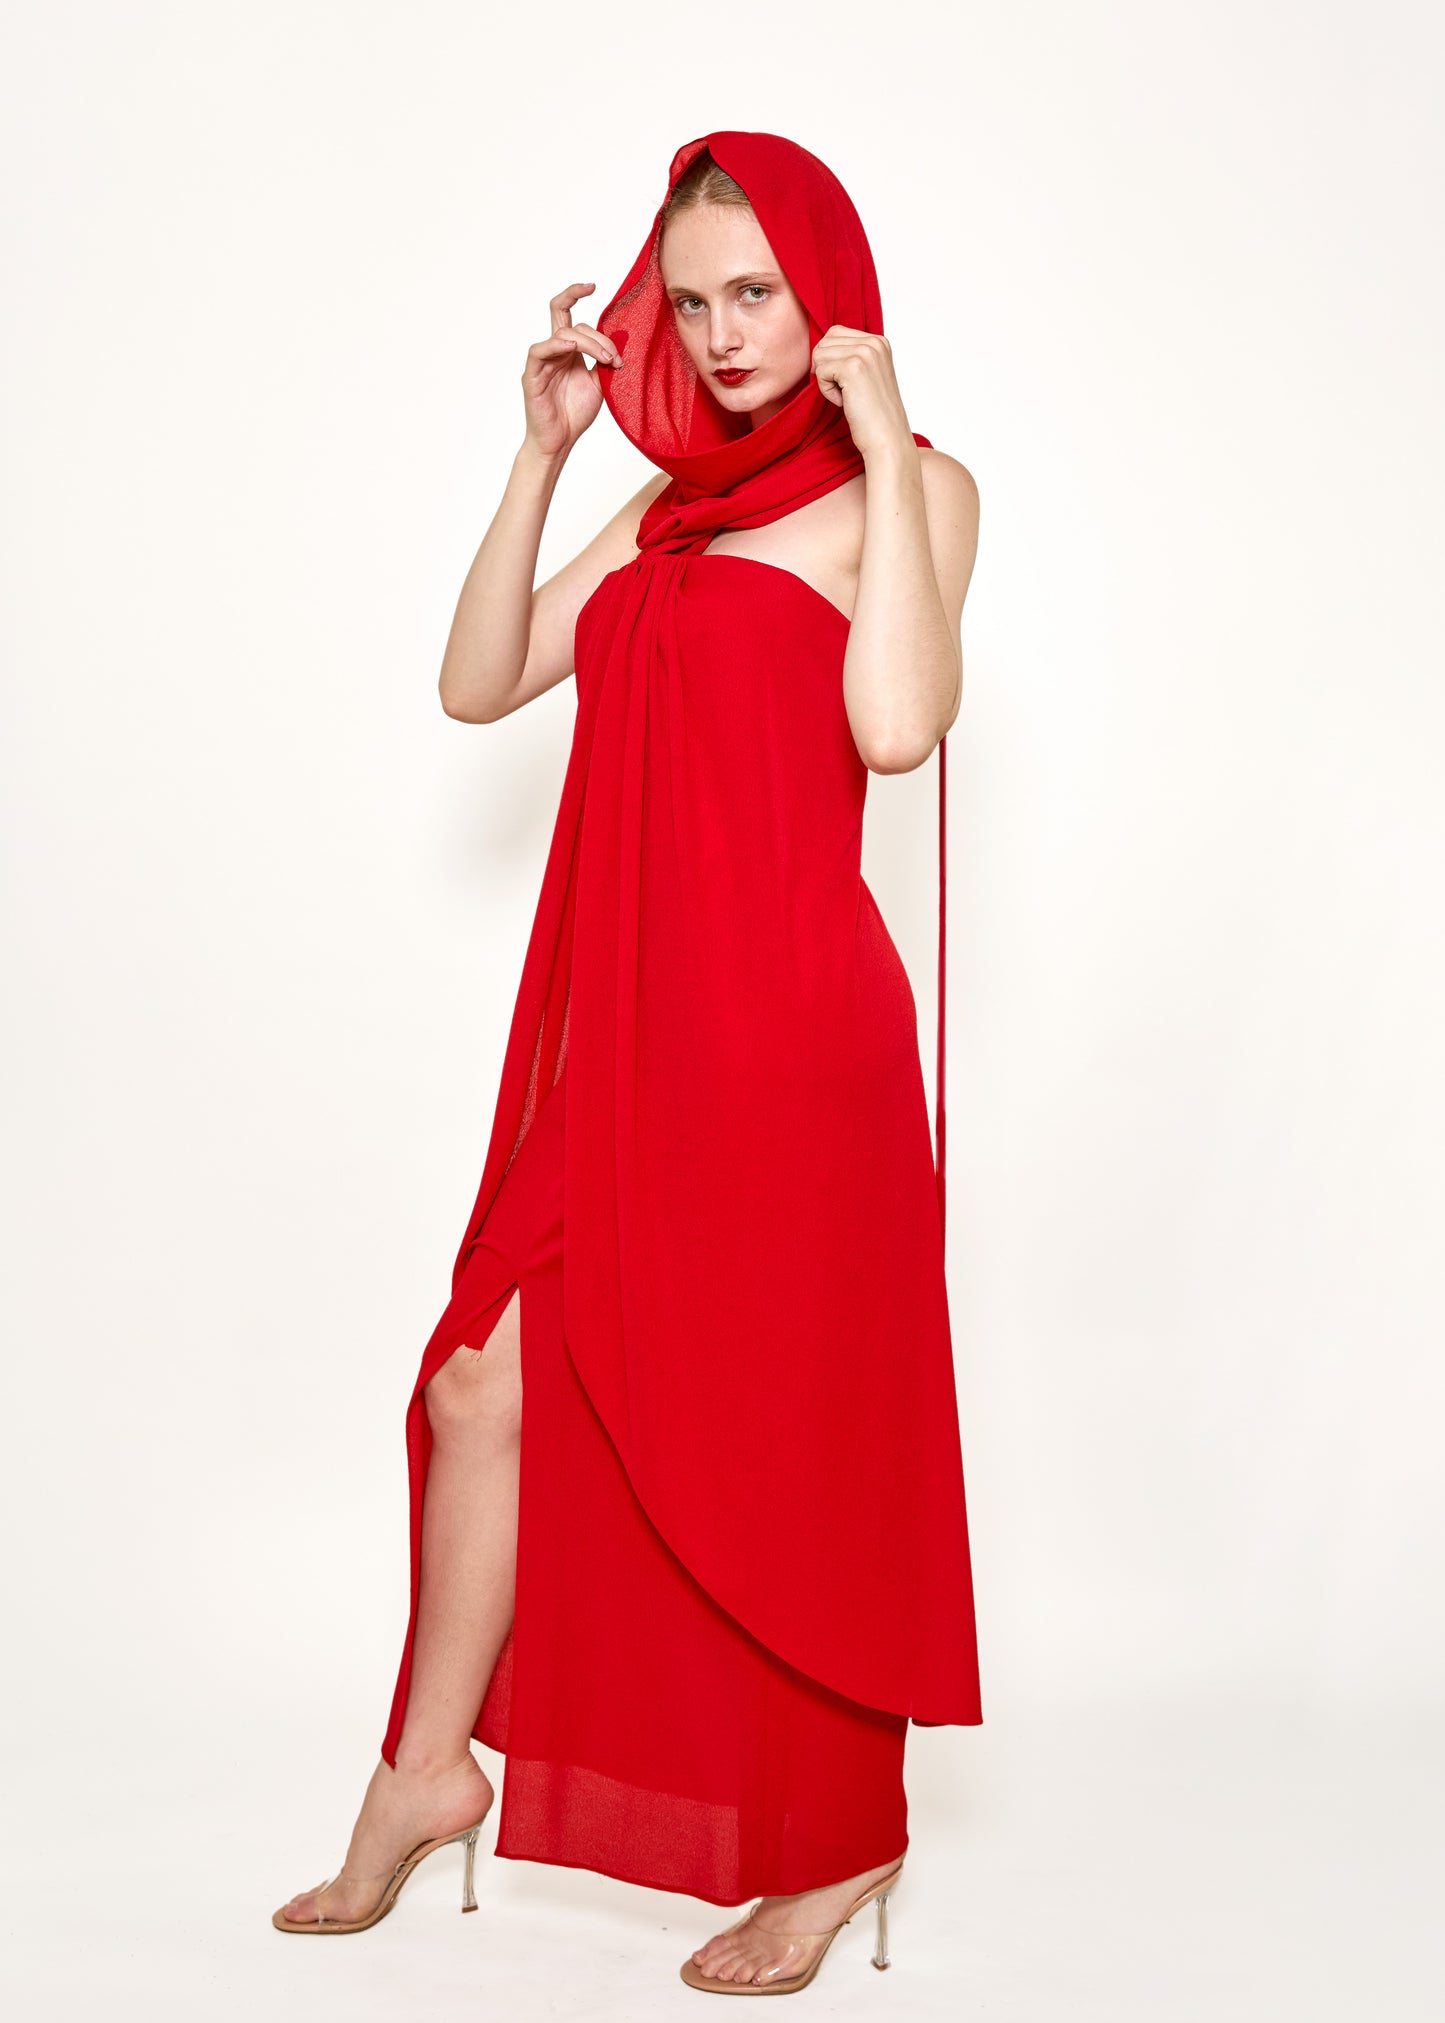 Bill Blass Red Hooded Dress